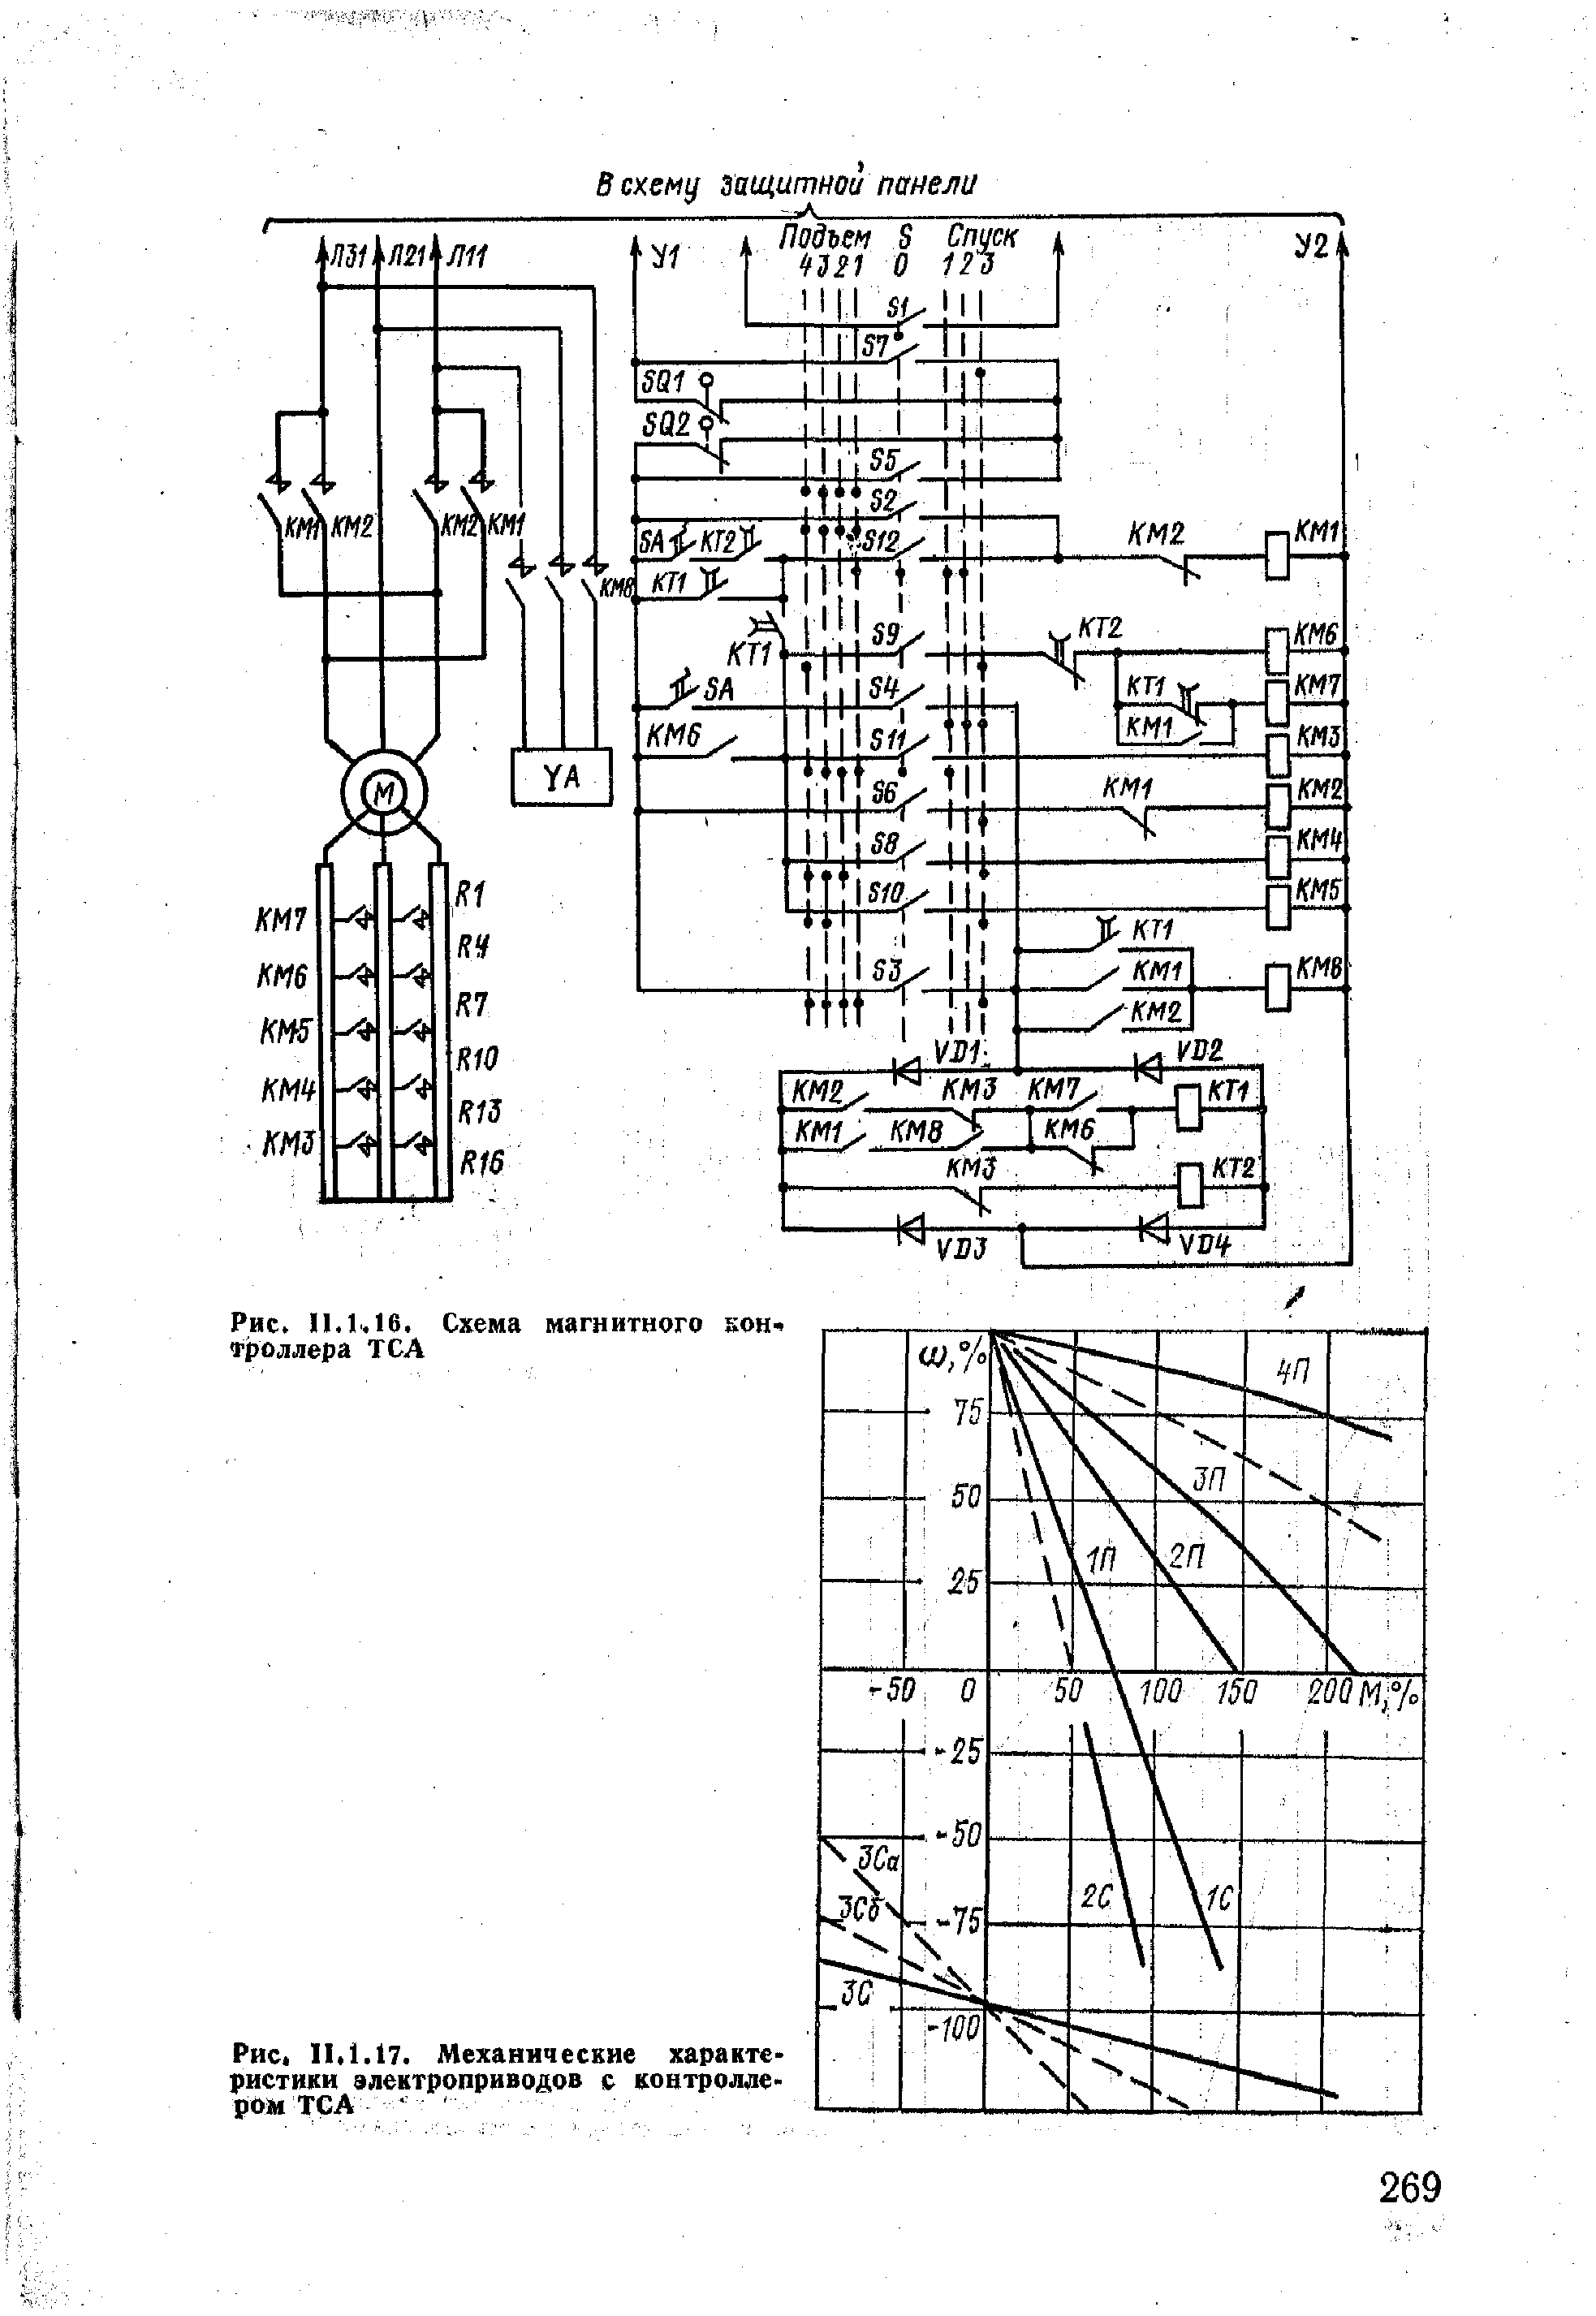 Рис. II. 1.17. Механические характеристики электроприводов с контроллером ТСА 
